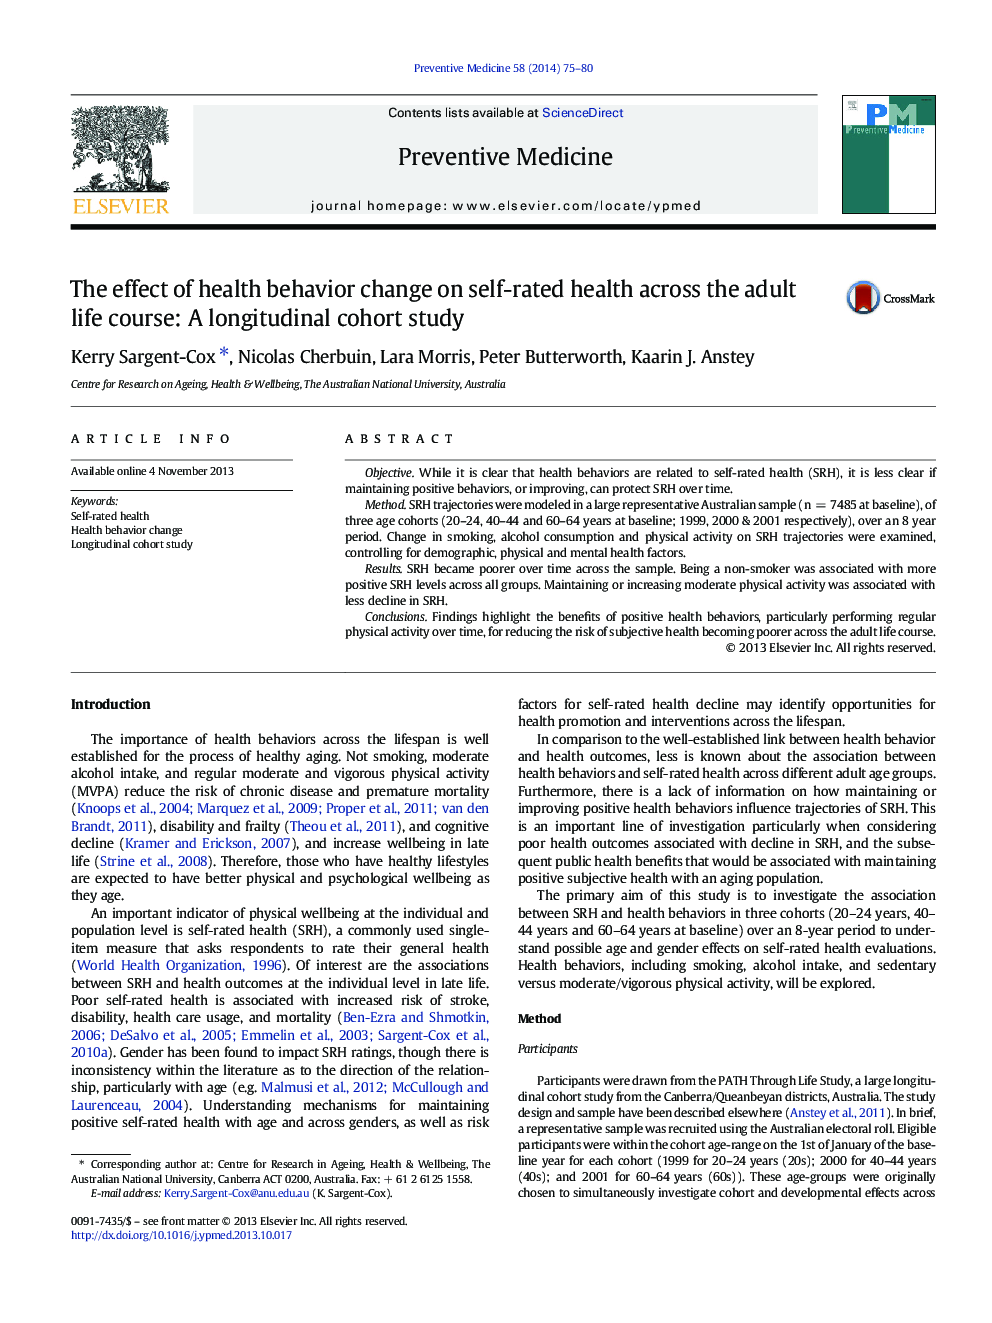 تاثیر رفتارهای بهداشتی بر سلامت خود در طول دوره زندگی بزرگسالان: یک مطالعه کوهورت طولی 